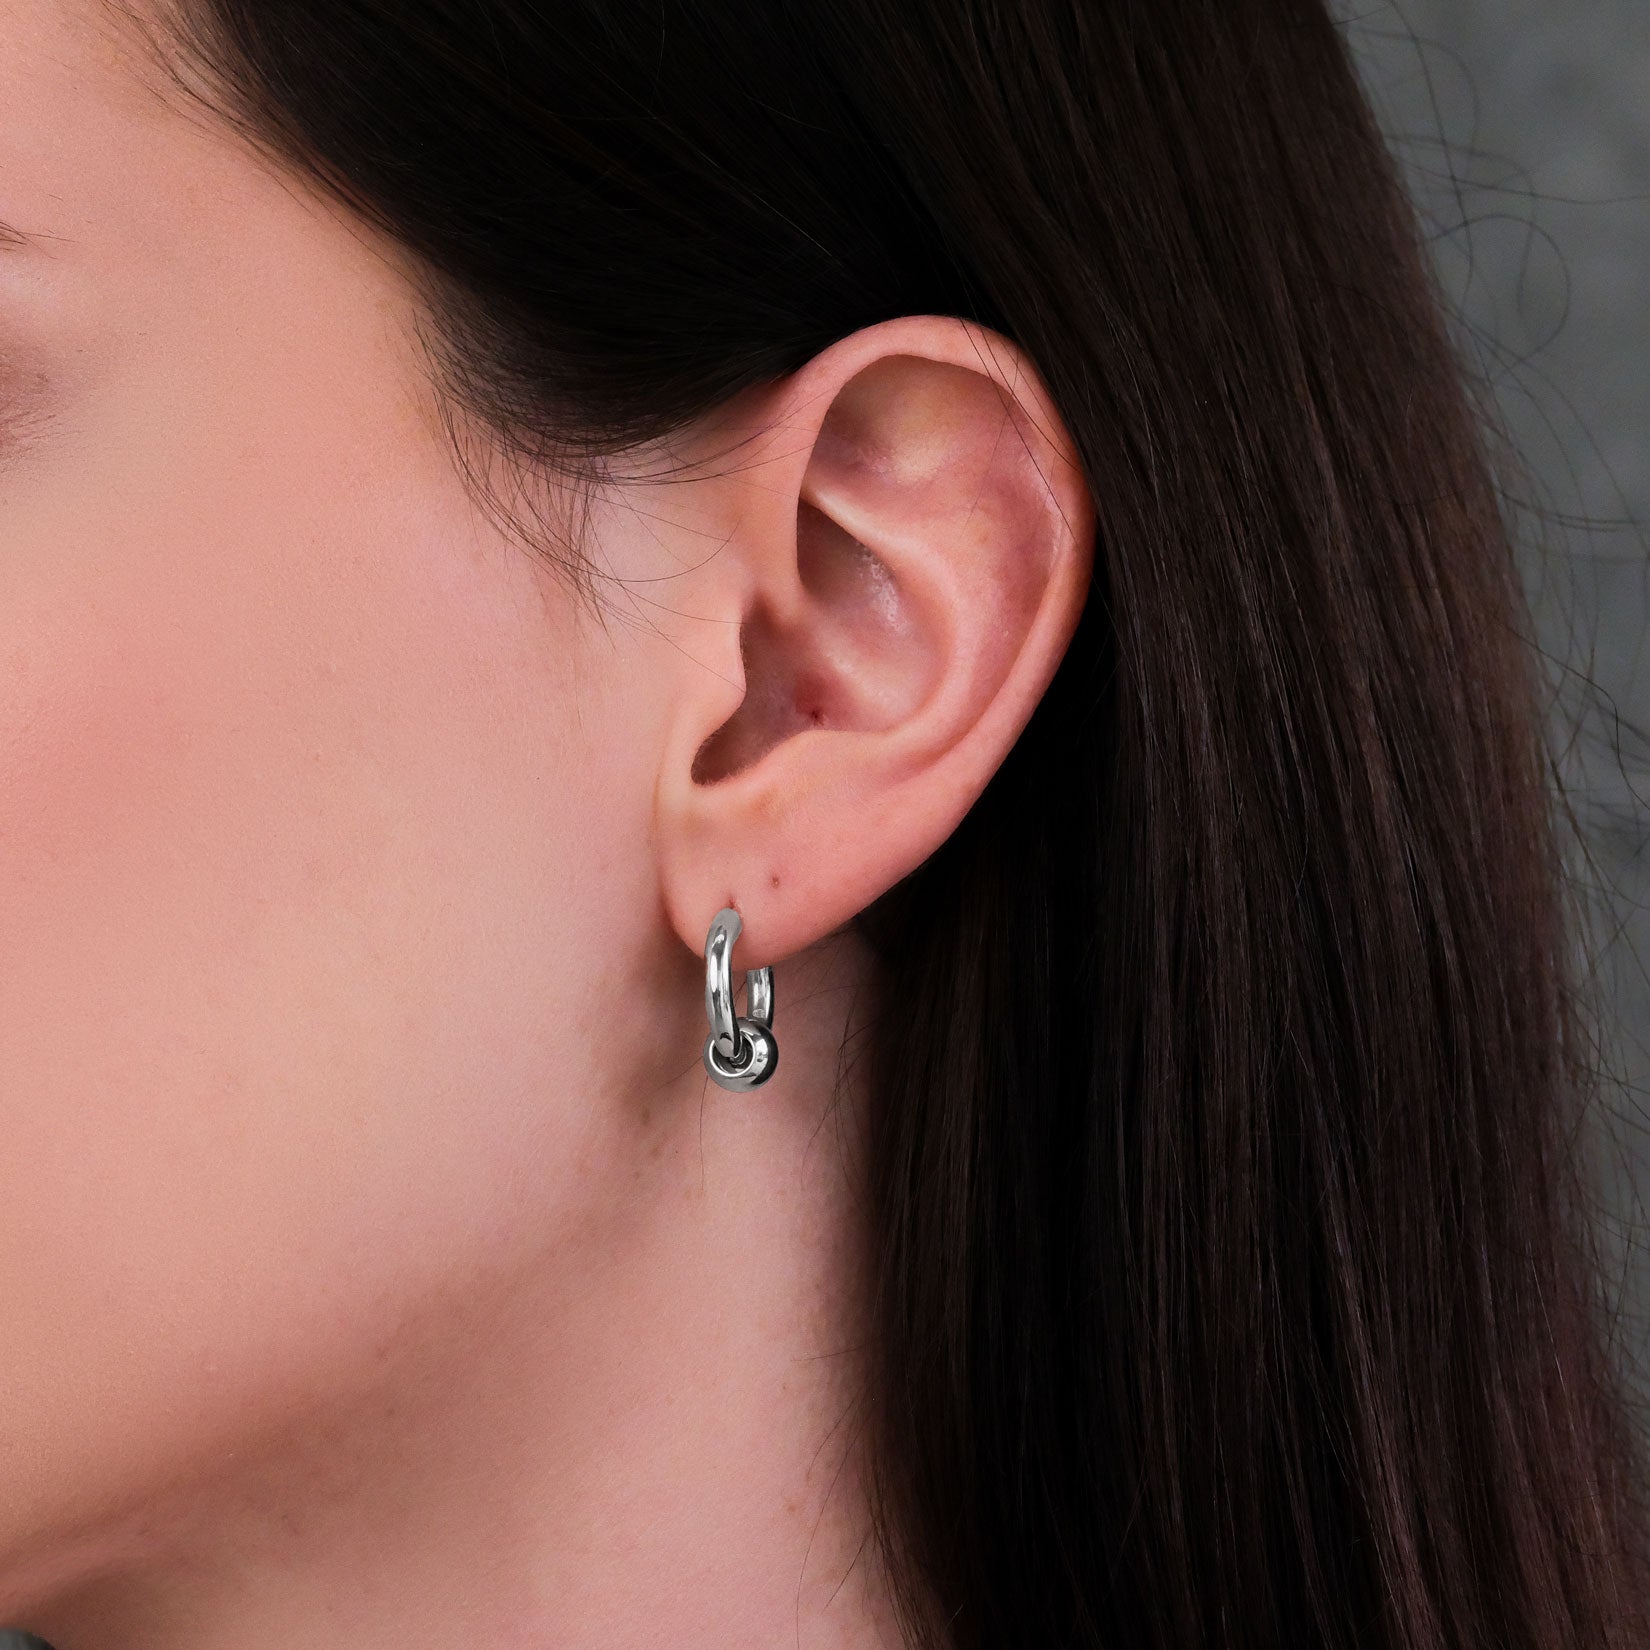 Women's punk earrings on body